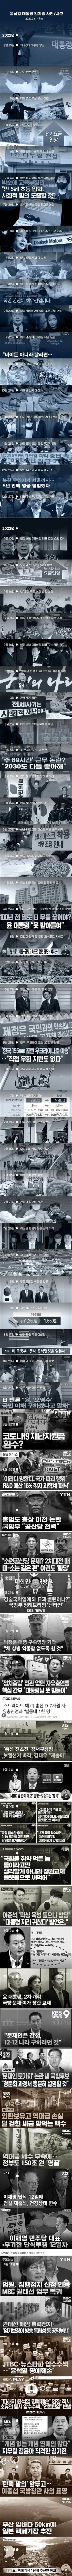 굥재앙의 대한민국 멸망 타임라인 (최신 업데이트)